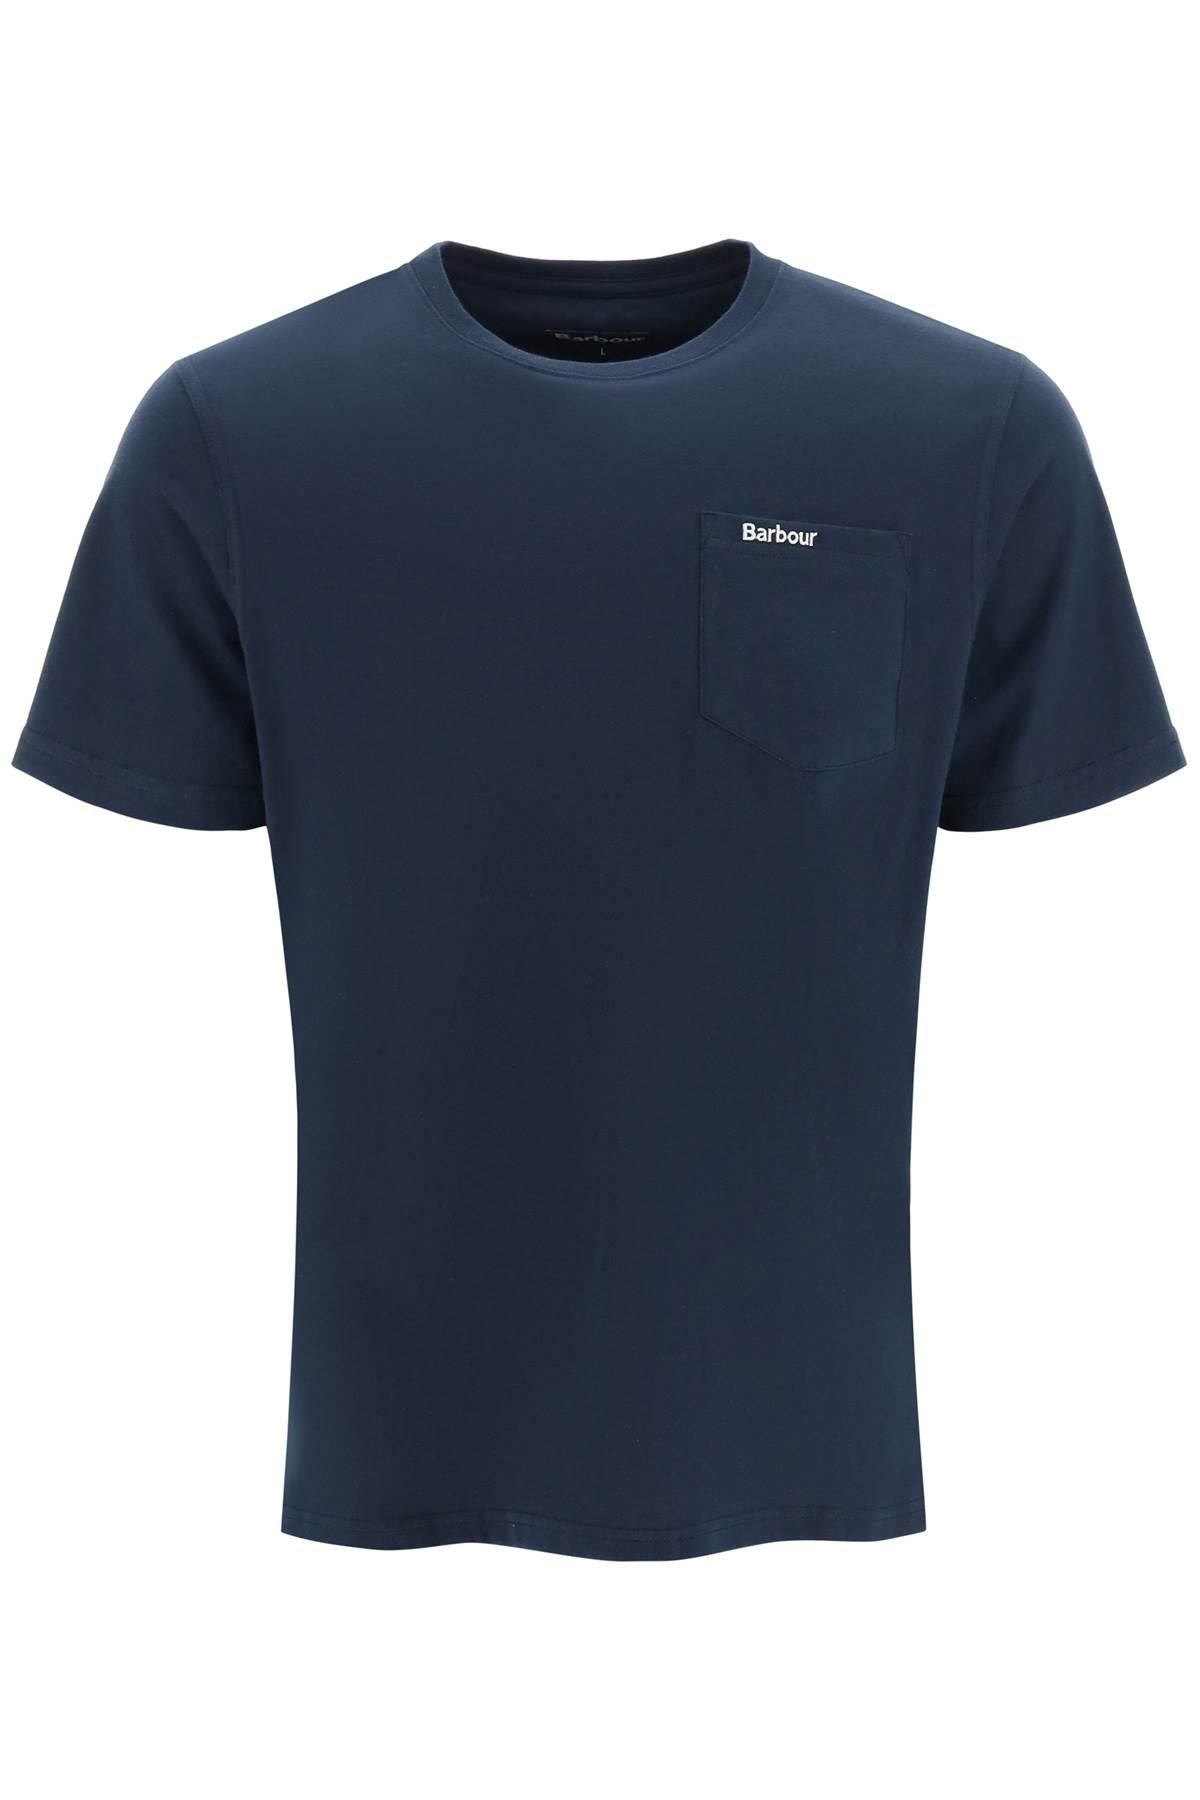 Barbour Classic Chest Pocket T Shirt   Blue